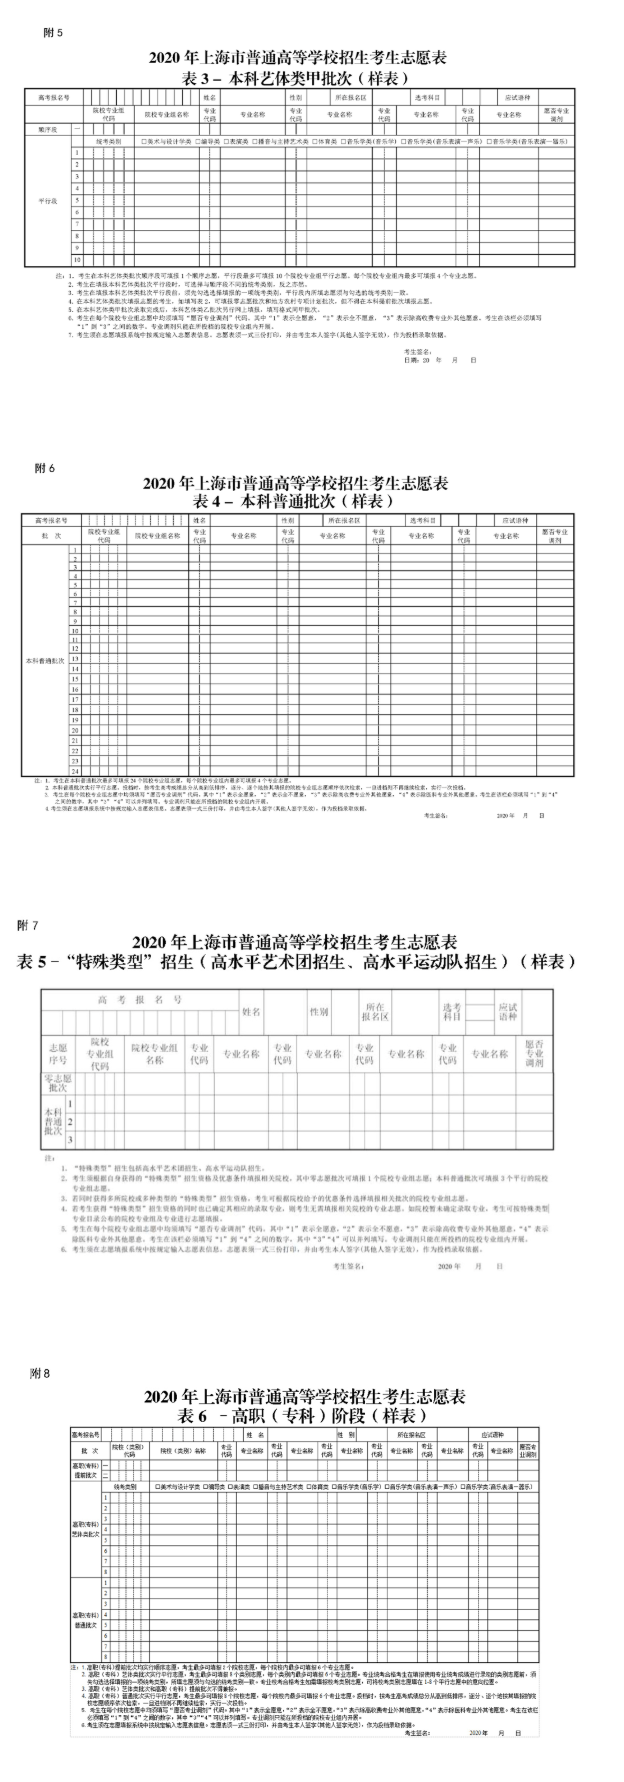 上海：关于印发《上海市2020年普通高等学校招生志愿填报与投档录取实施办法》的通知